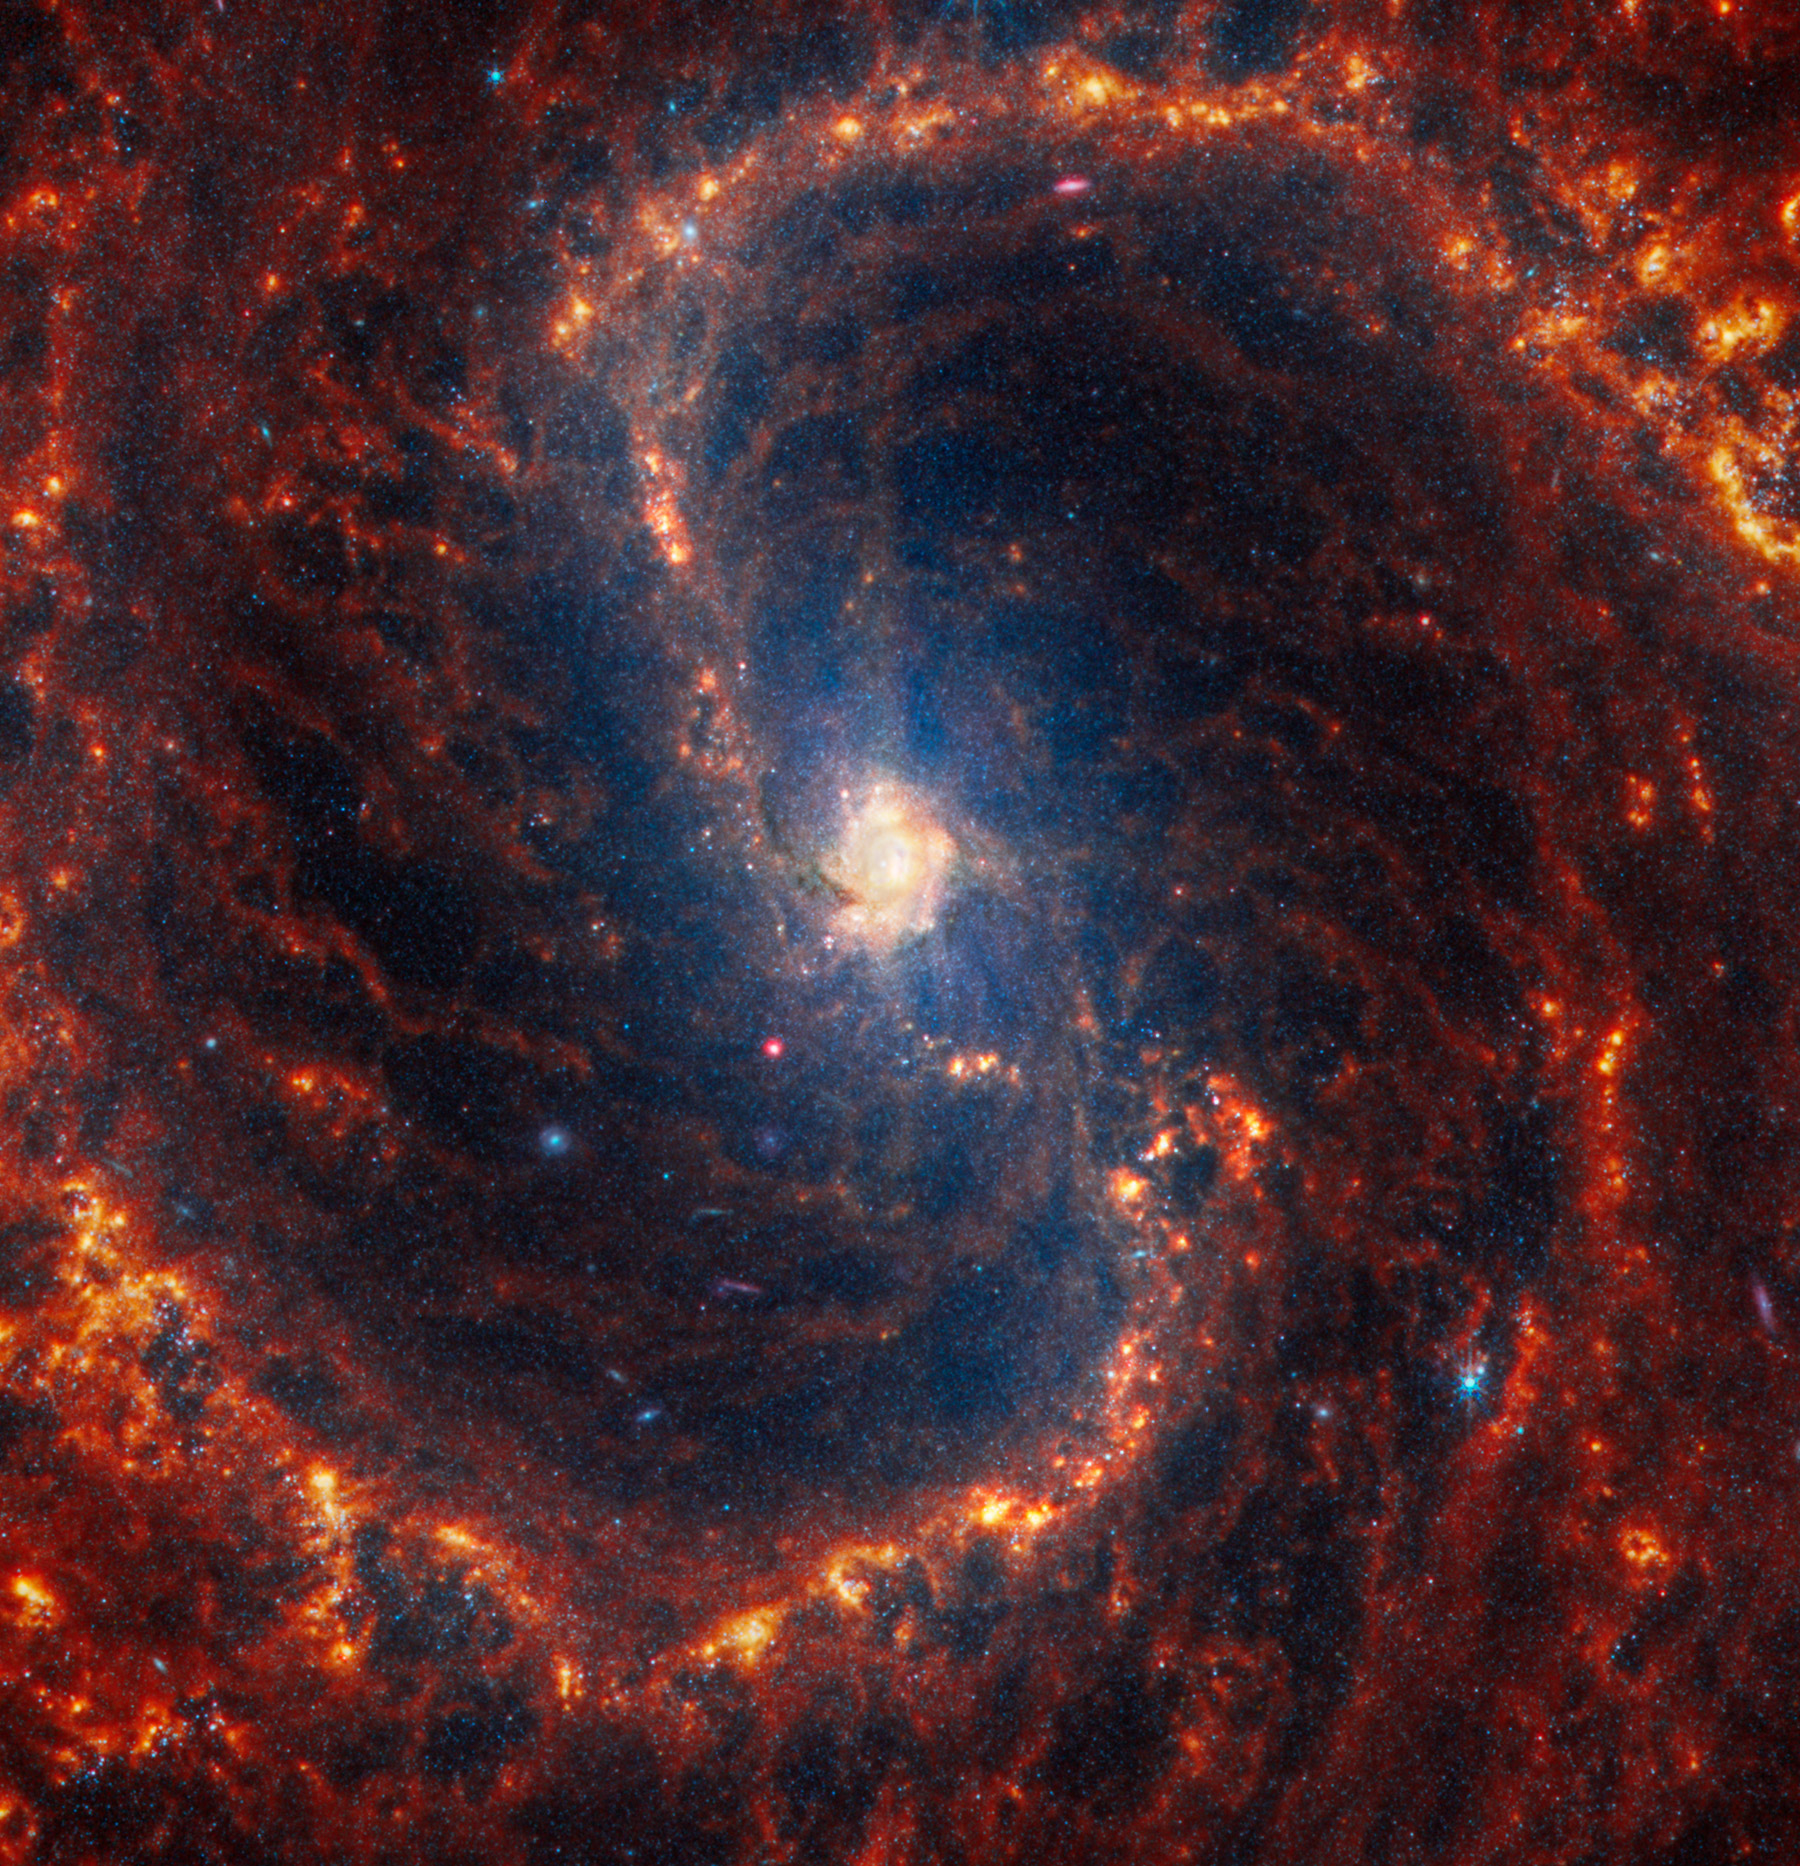 Галактика NGC 4535, расположенная в созвездии Девы, находится примерно в 50 млн световых лет от Земли. Яркие голубоватые цвета указывают на присутствие большего числа молодых звезд